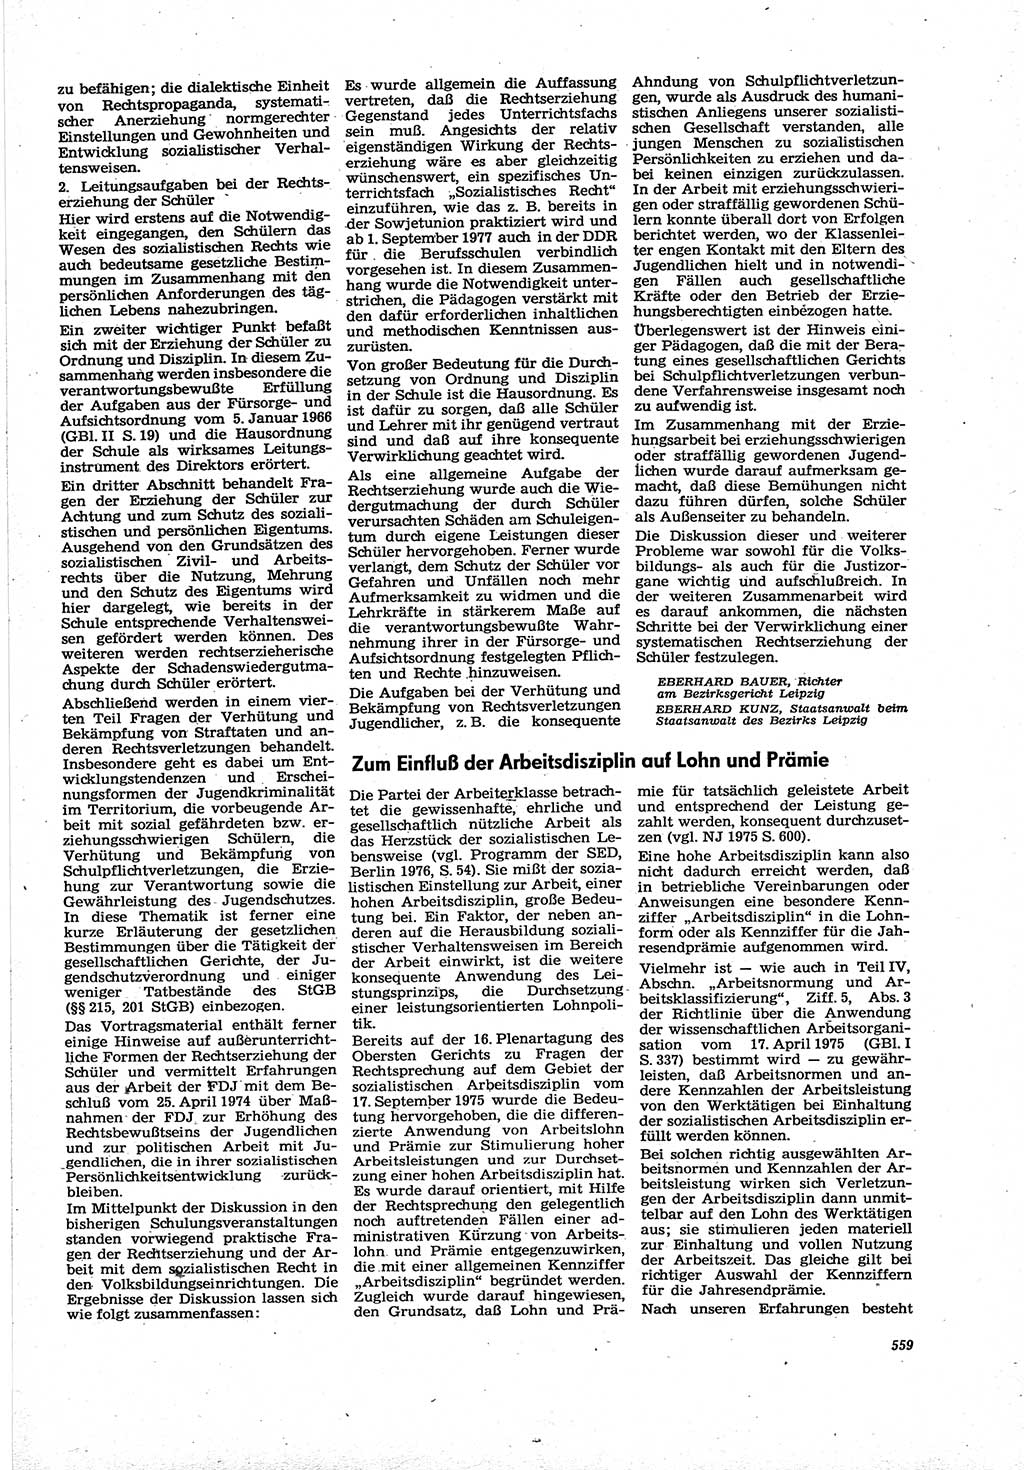 Neue Justiz (NJ), Zeitschrift für Recht und Rechtswissenschaft [Deutsche Demokratische Republik (DDR)], 30. Jahrgang 1976, Seite 559 (NJ DDR 1976, S. 559)